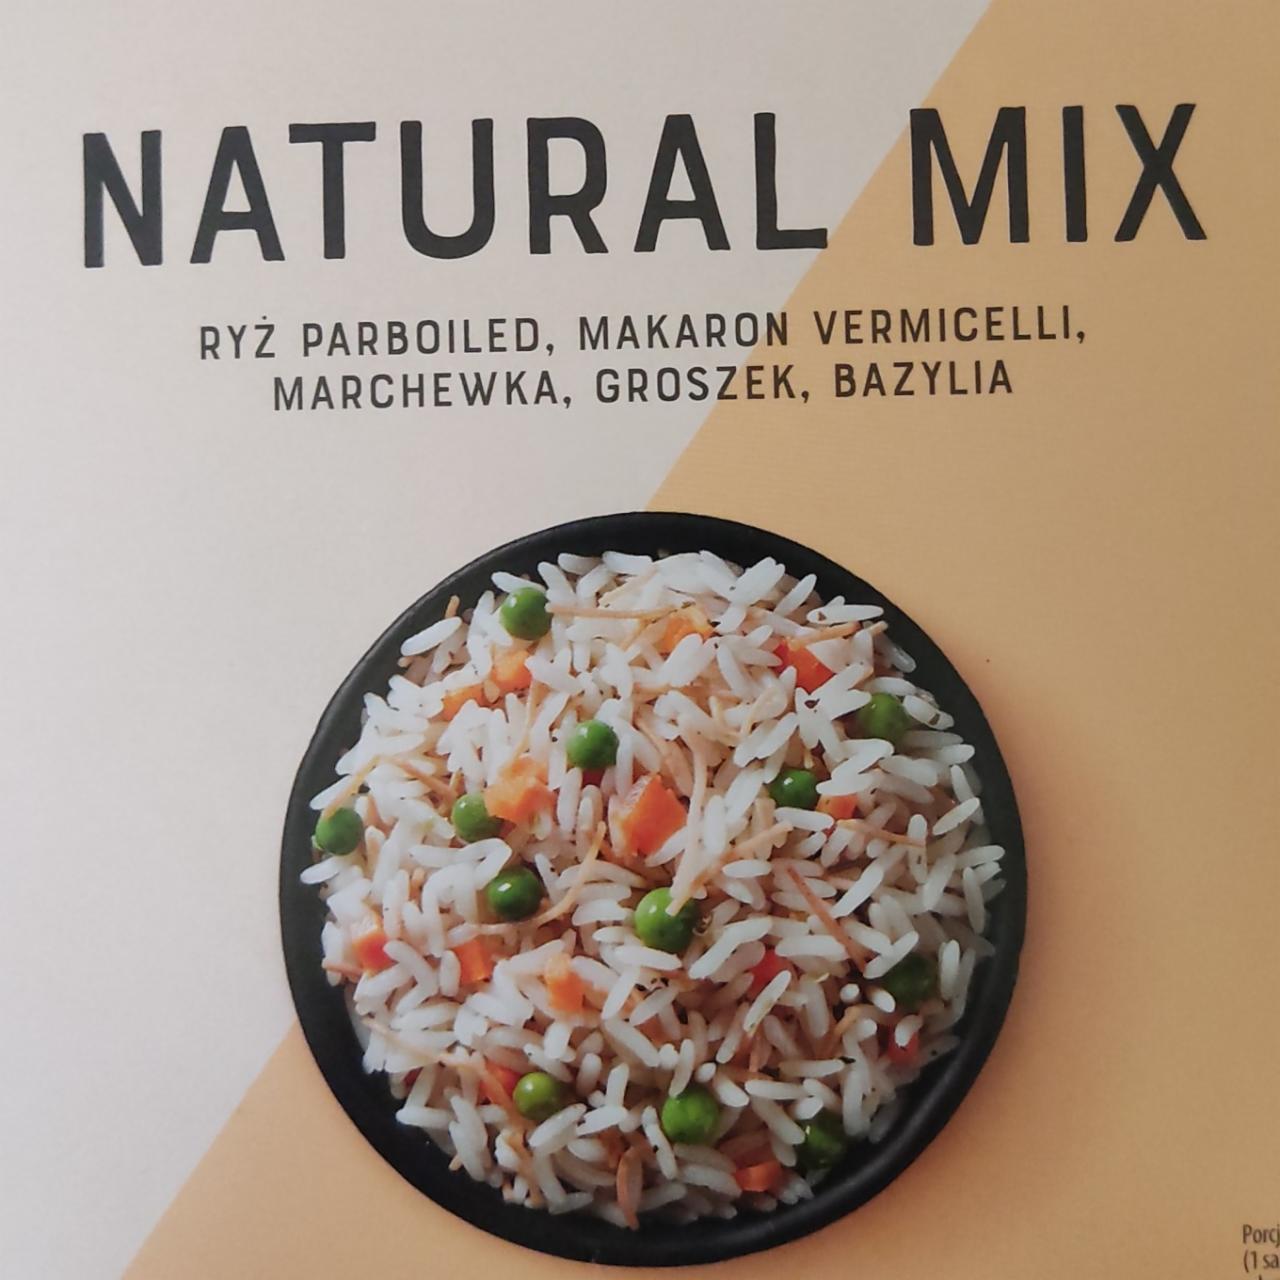 Fotografie - Natural Mix ryż parboiled, makaron vermicelli z pszenicy durum, suszony zielony groszek, suszona marchewka, suszona bazylia Plony Natury